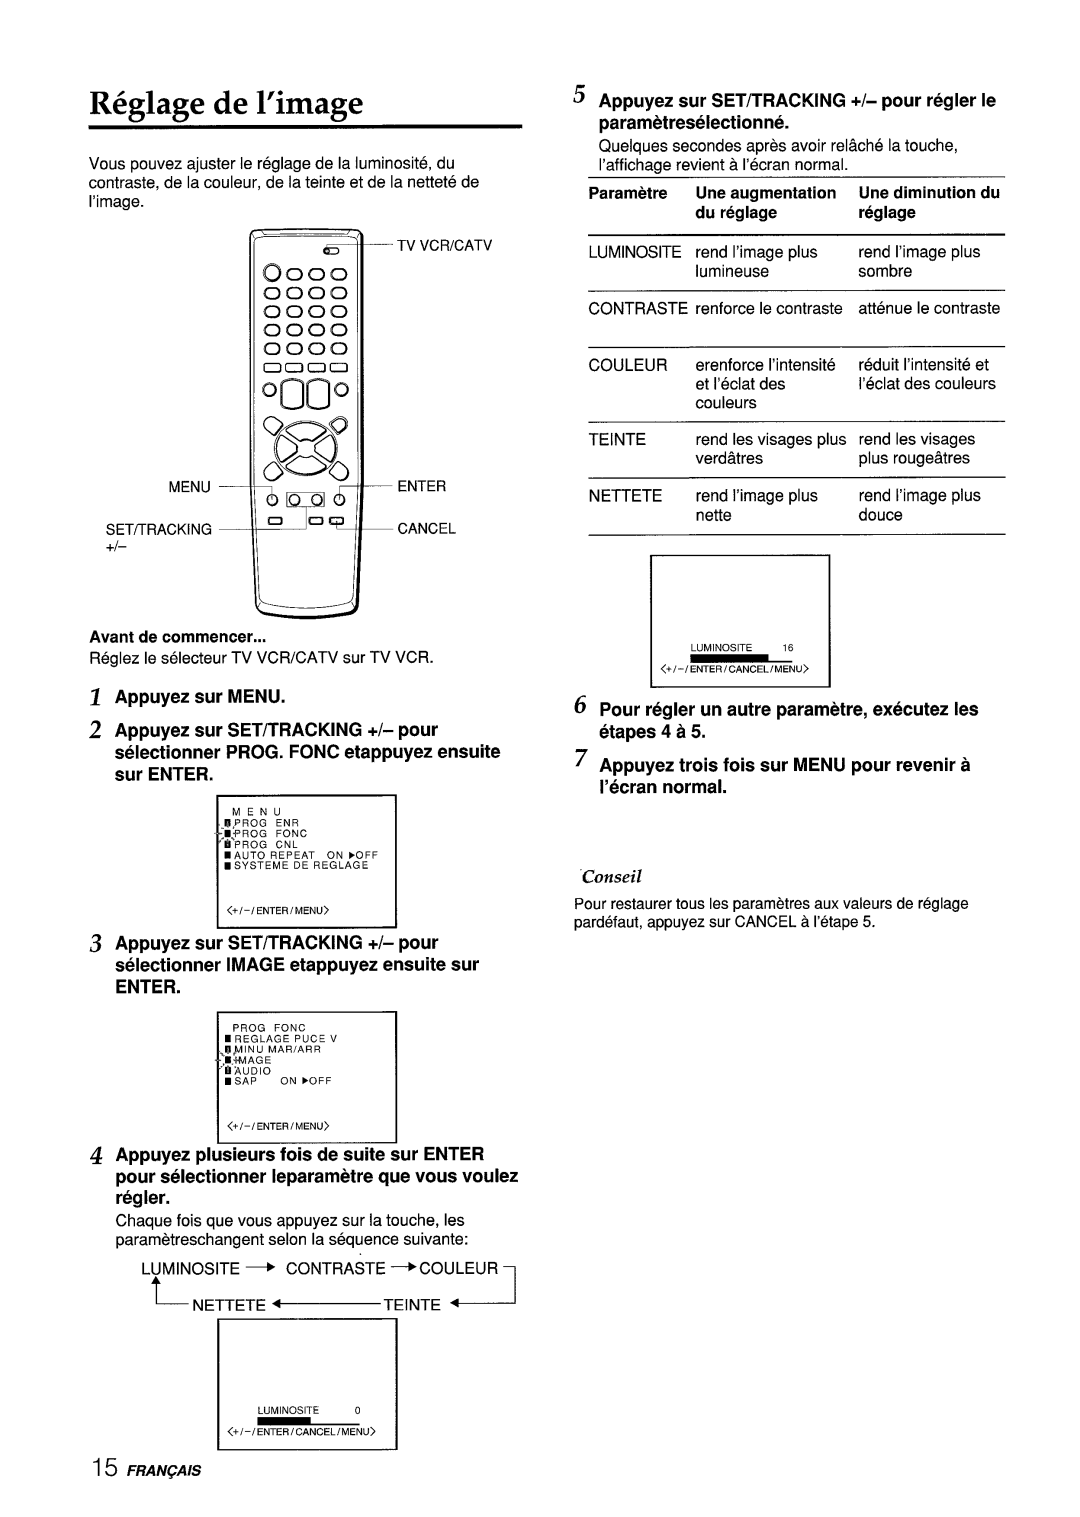 Aiwa VX-S135U manual R6glage de l’image, Appuyez sur MENU, Appuyez sur SET/TRACKING +/- pour regler Ie parametreselectionne 